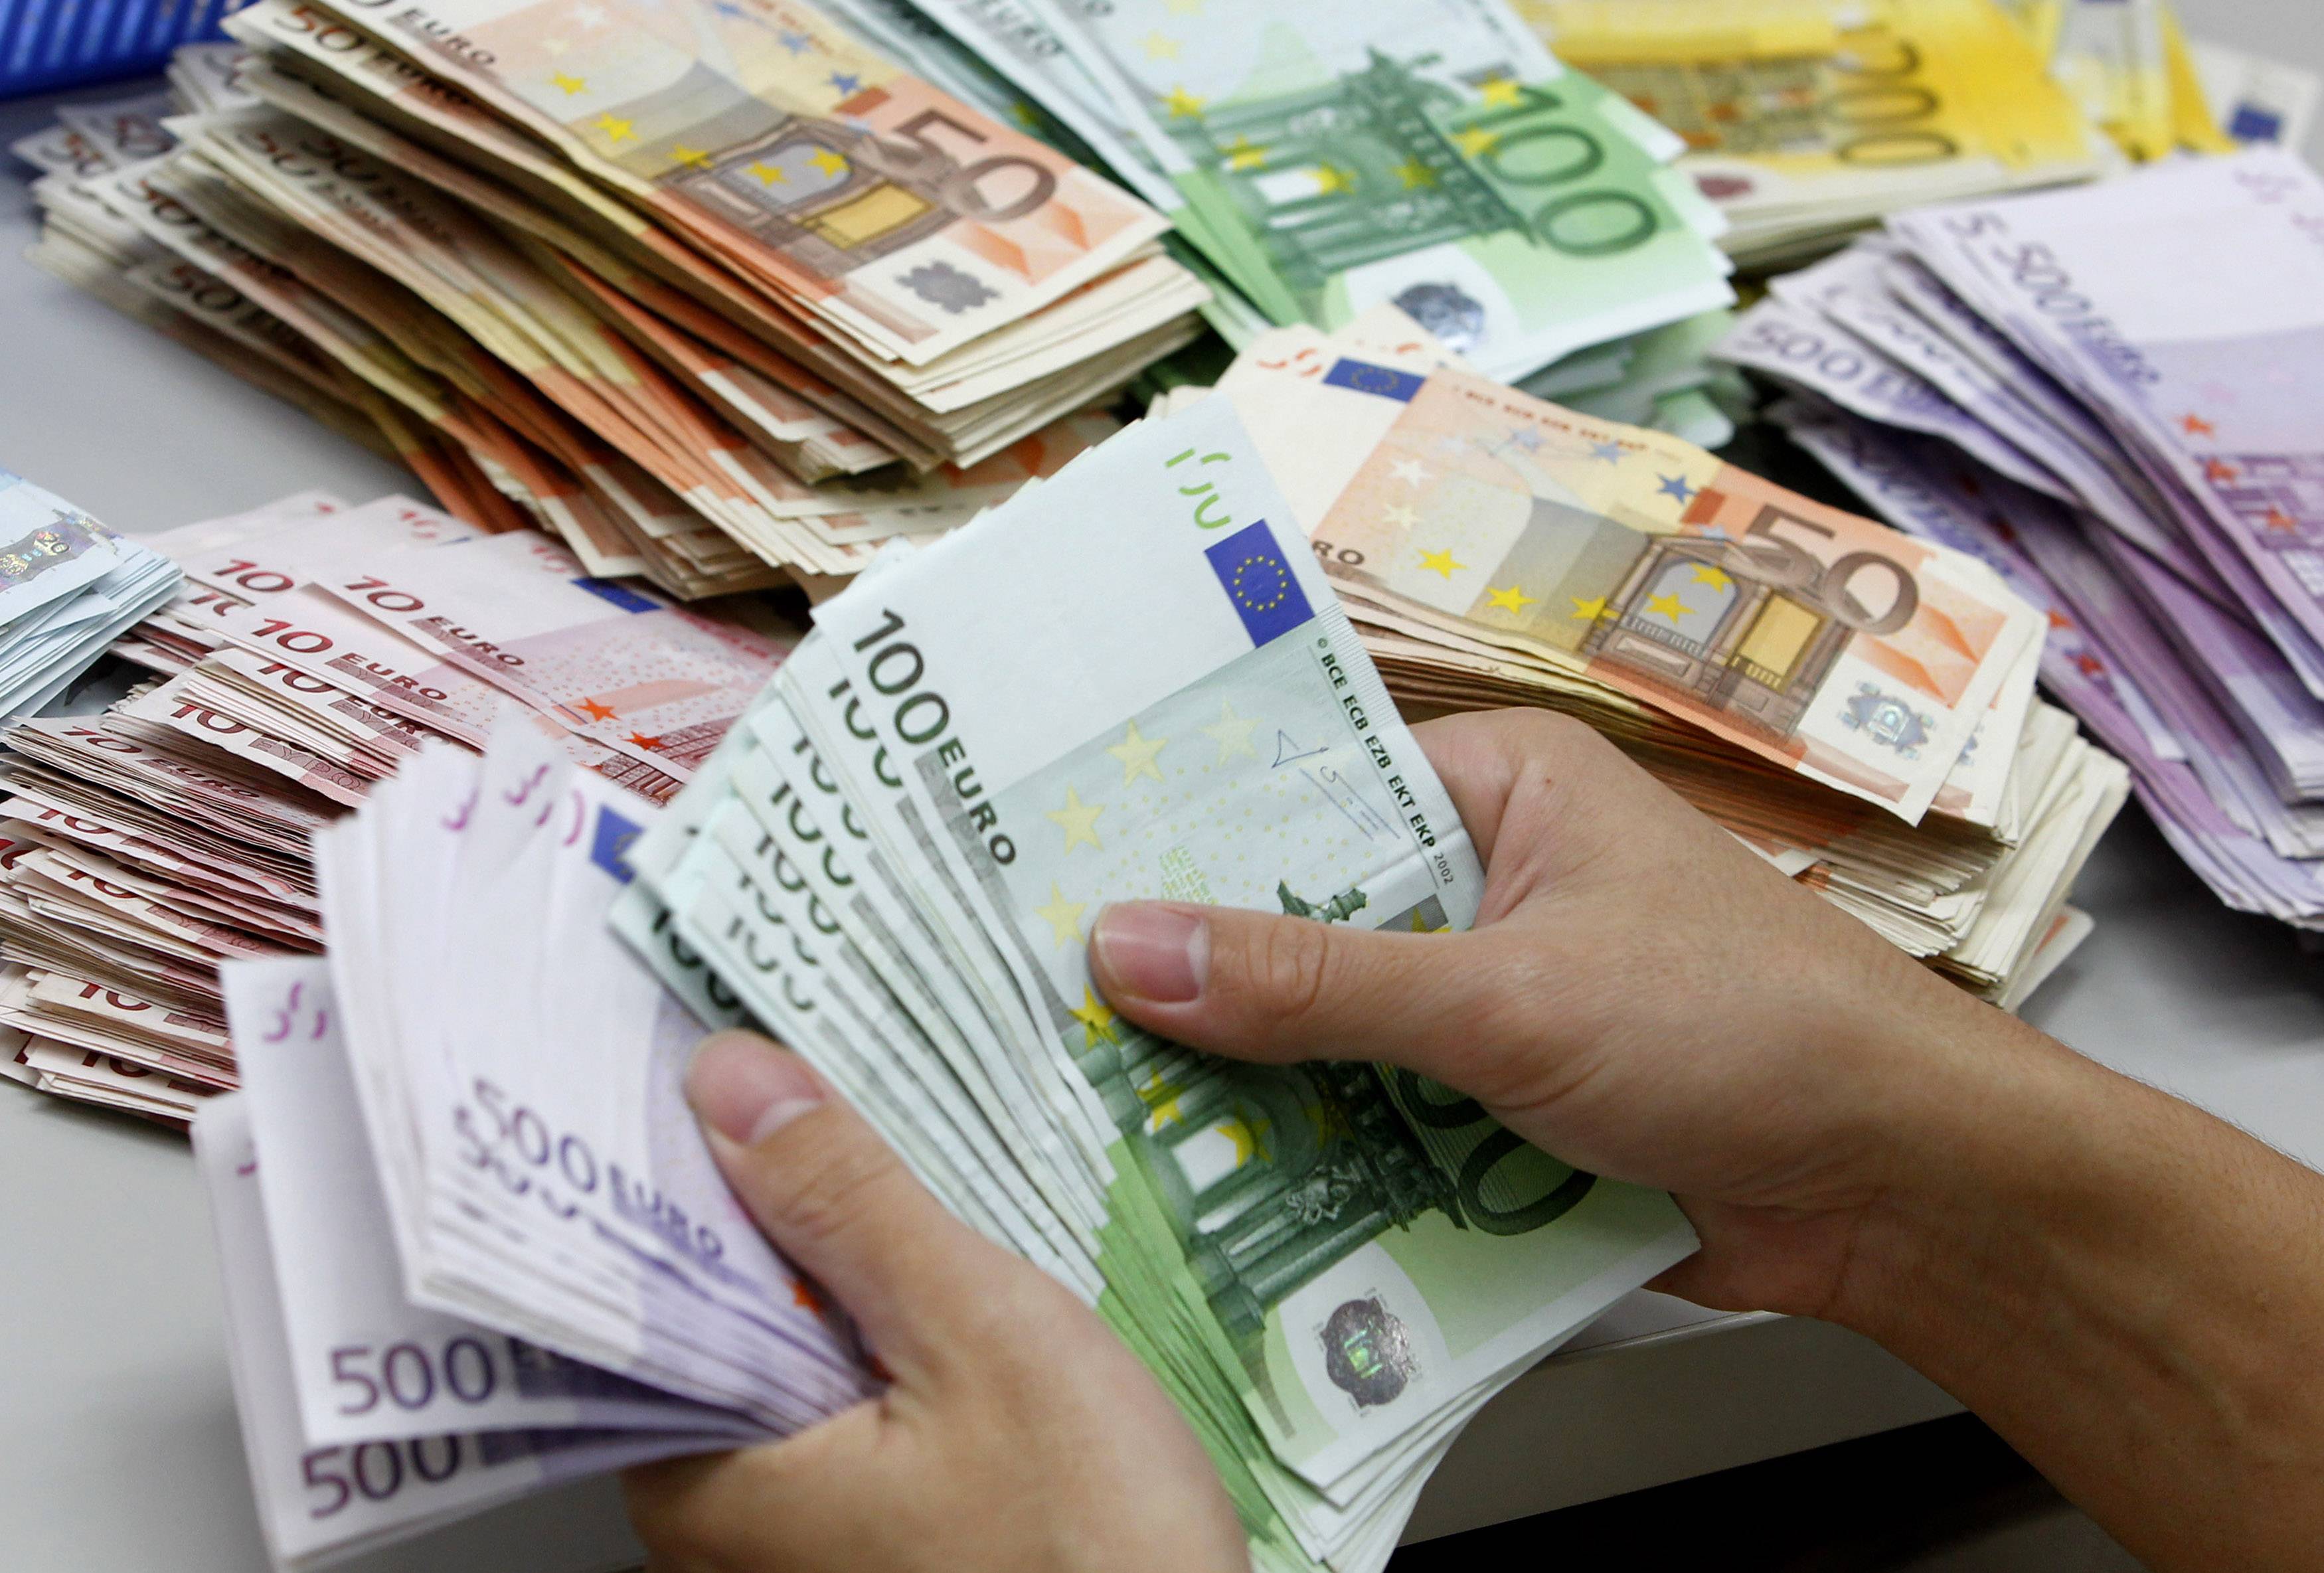 Το ΣΔΟΕ βρήκε 2,3 εκατ. ευρώ σε λογαριασμό πρώην αστυνομικού